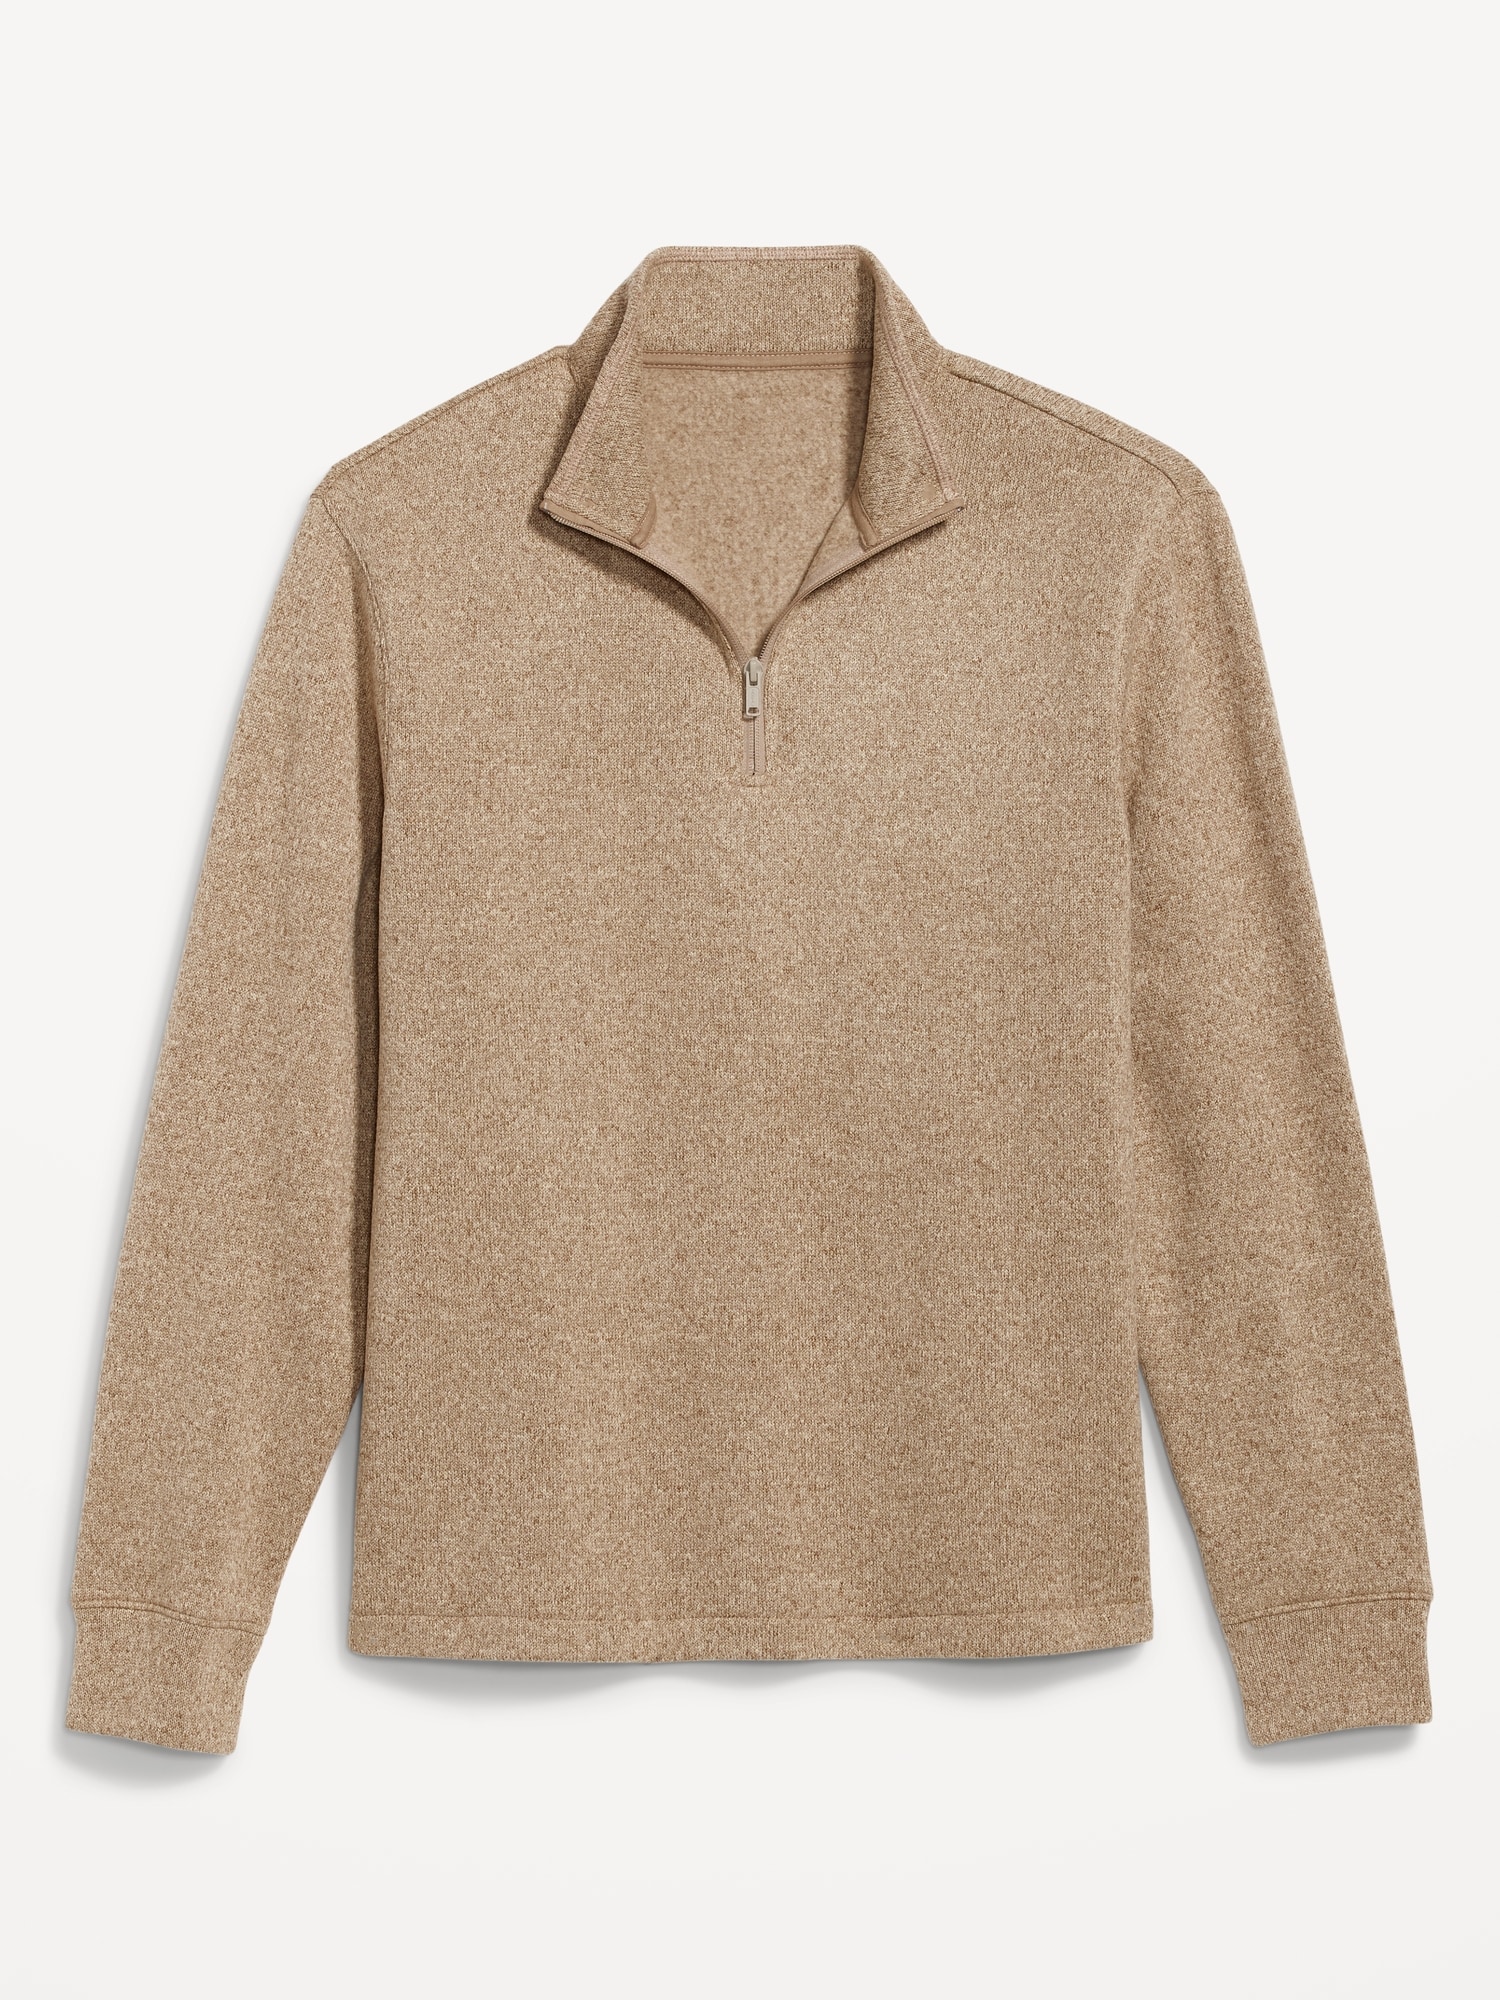 Saddlebred, Sweaters, Quarter Zip Saddlebred Comfort Flex Fleece Pullover  Large